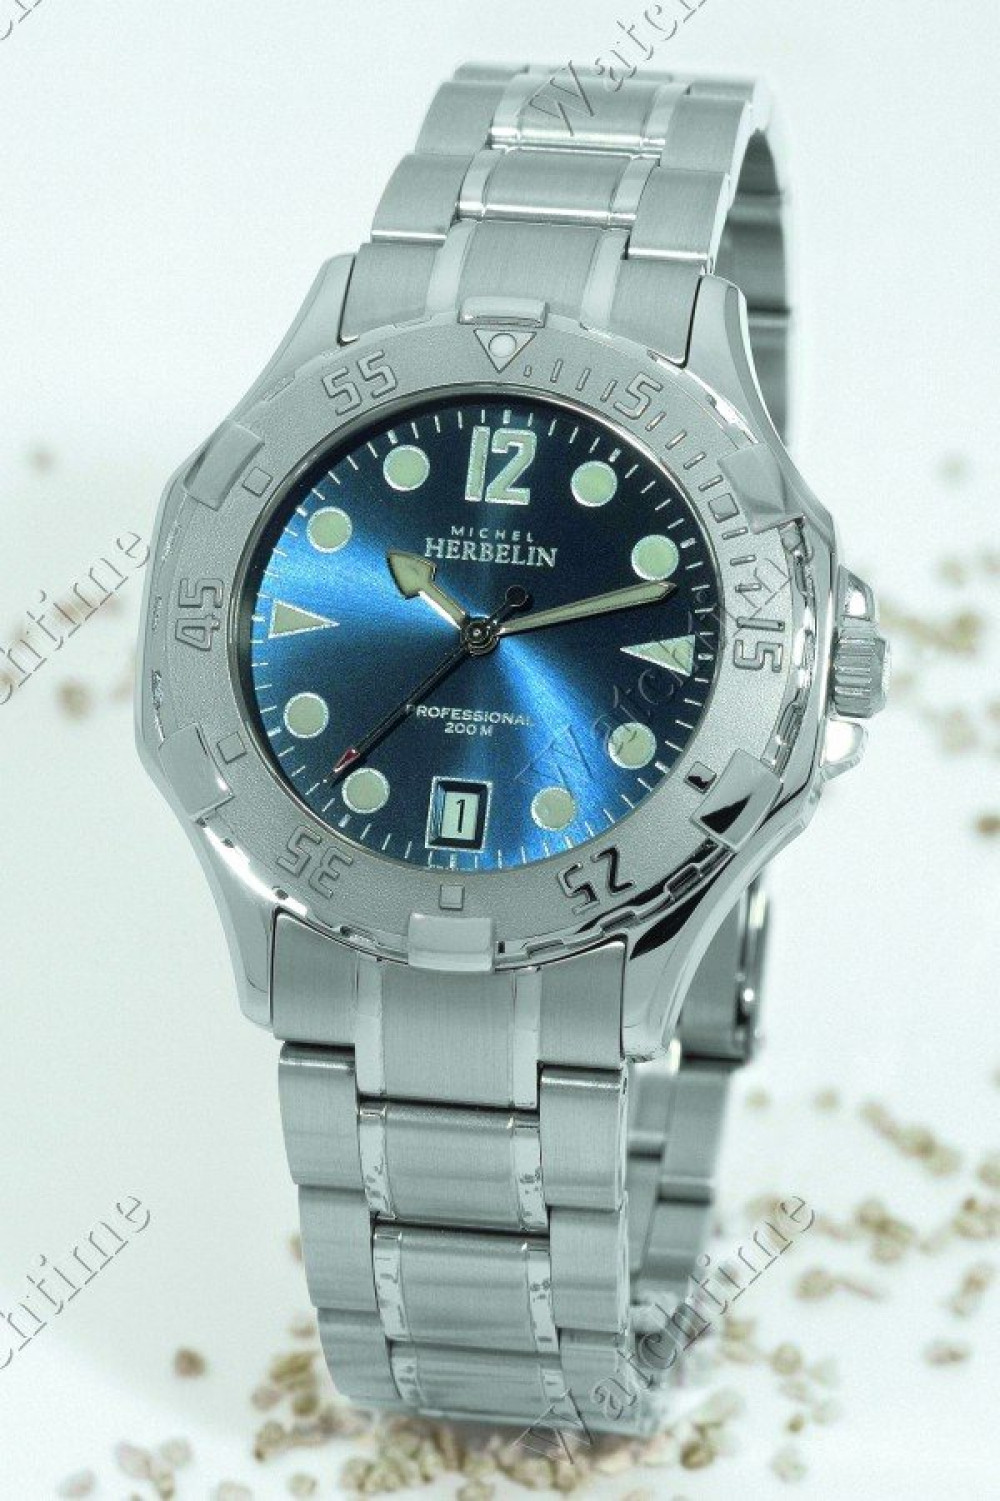 Zegarek firmy Michel Herbelin, model Sport 200